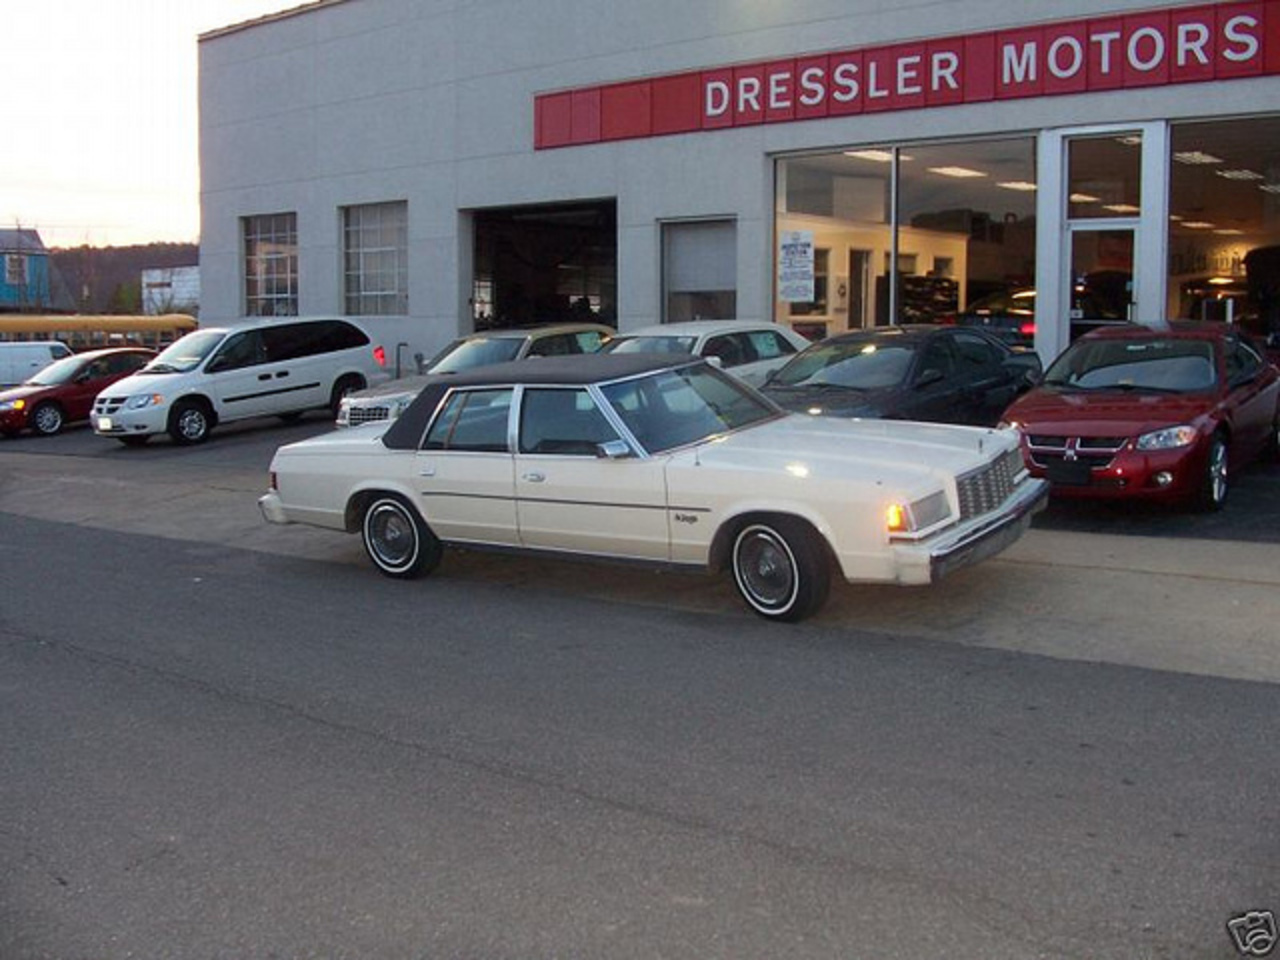 1980 Dodge ST-REGIS IN FRONT OF DEALERSHIP | Flickr - Photo Sharing!